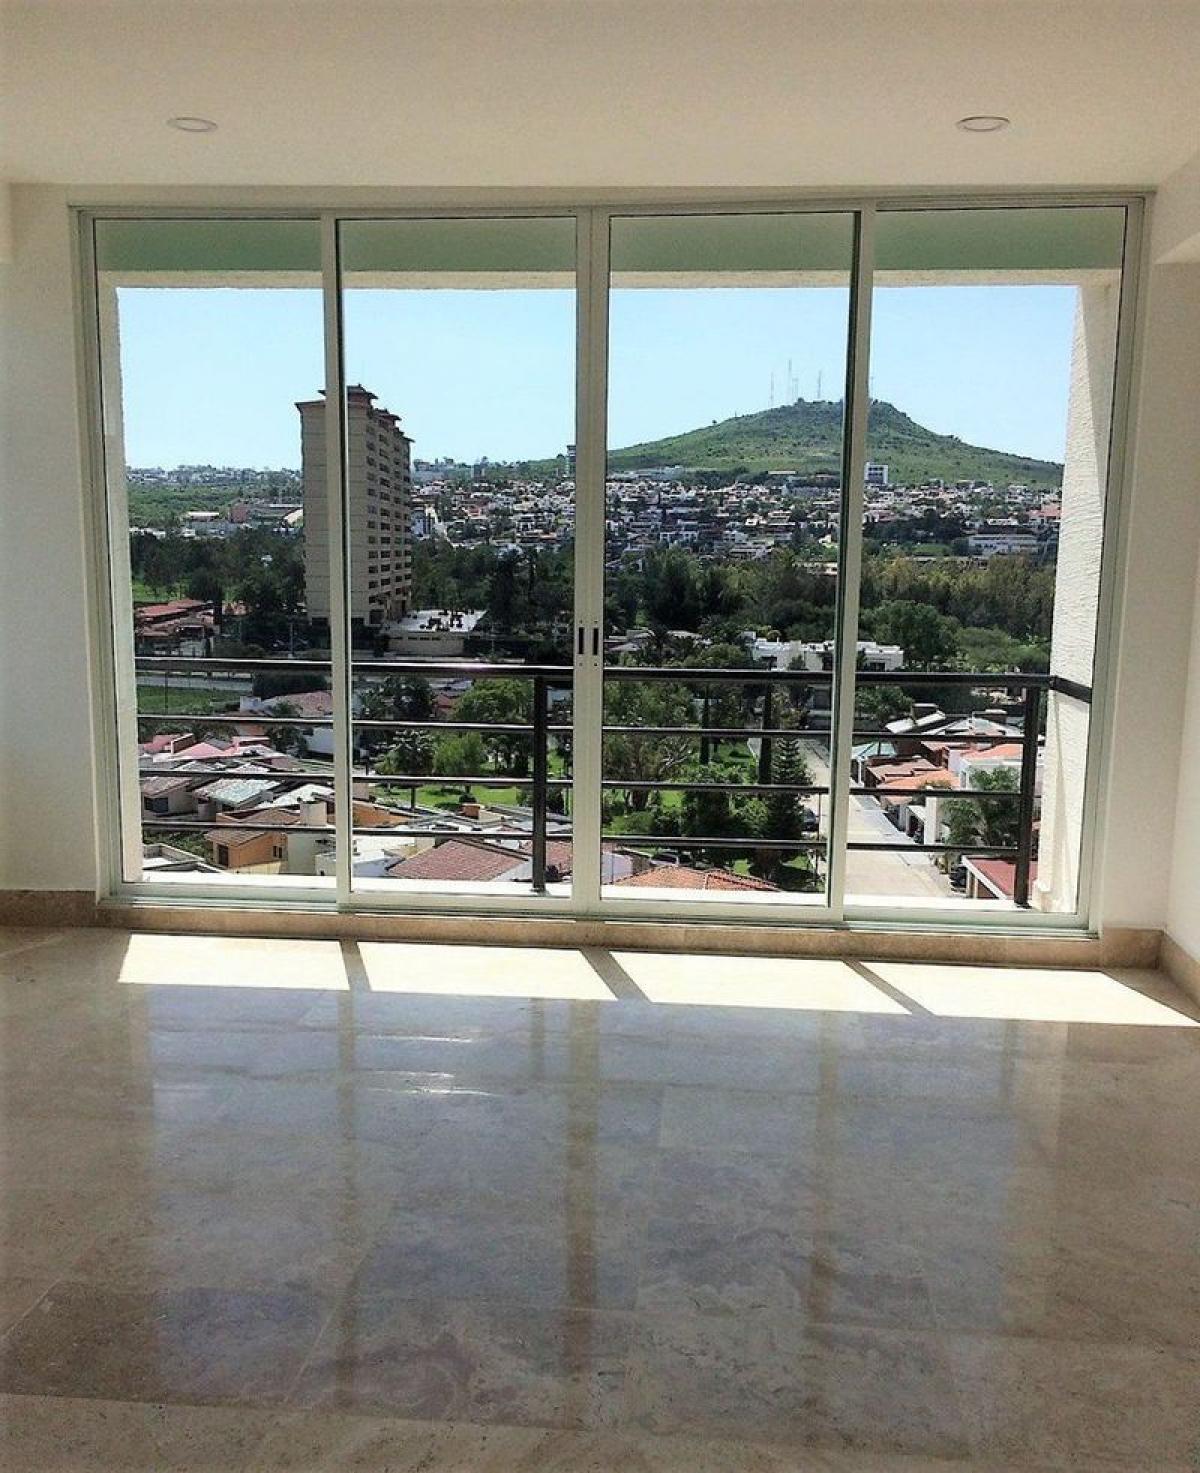 Picture of Apartment For Sale in Guanajuato, Guanajuato, Mexico